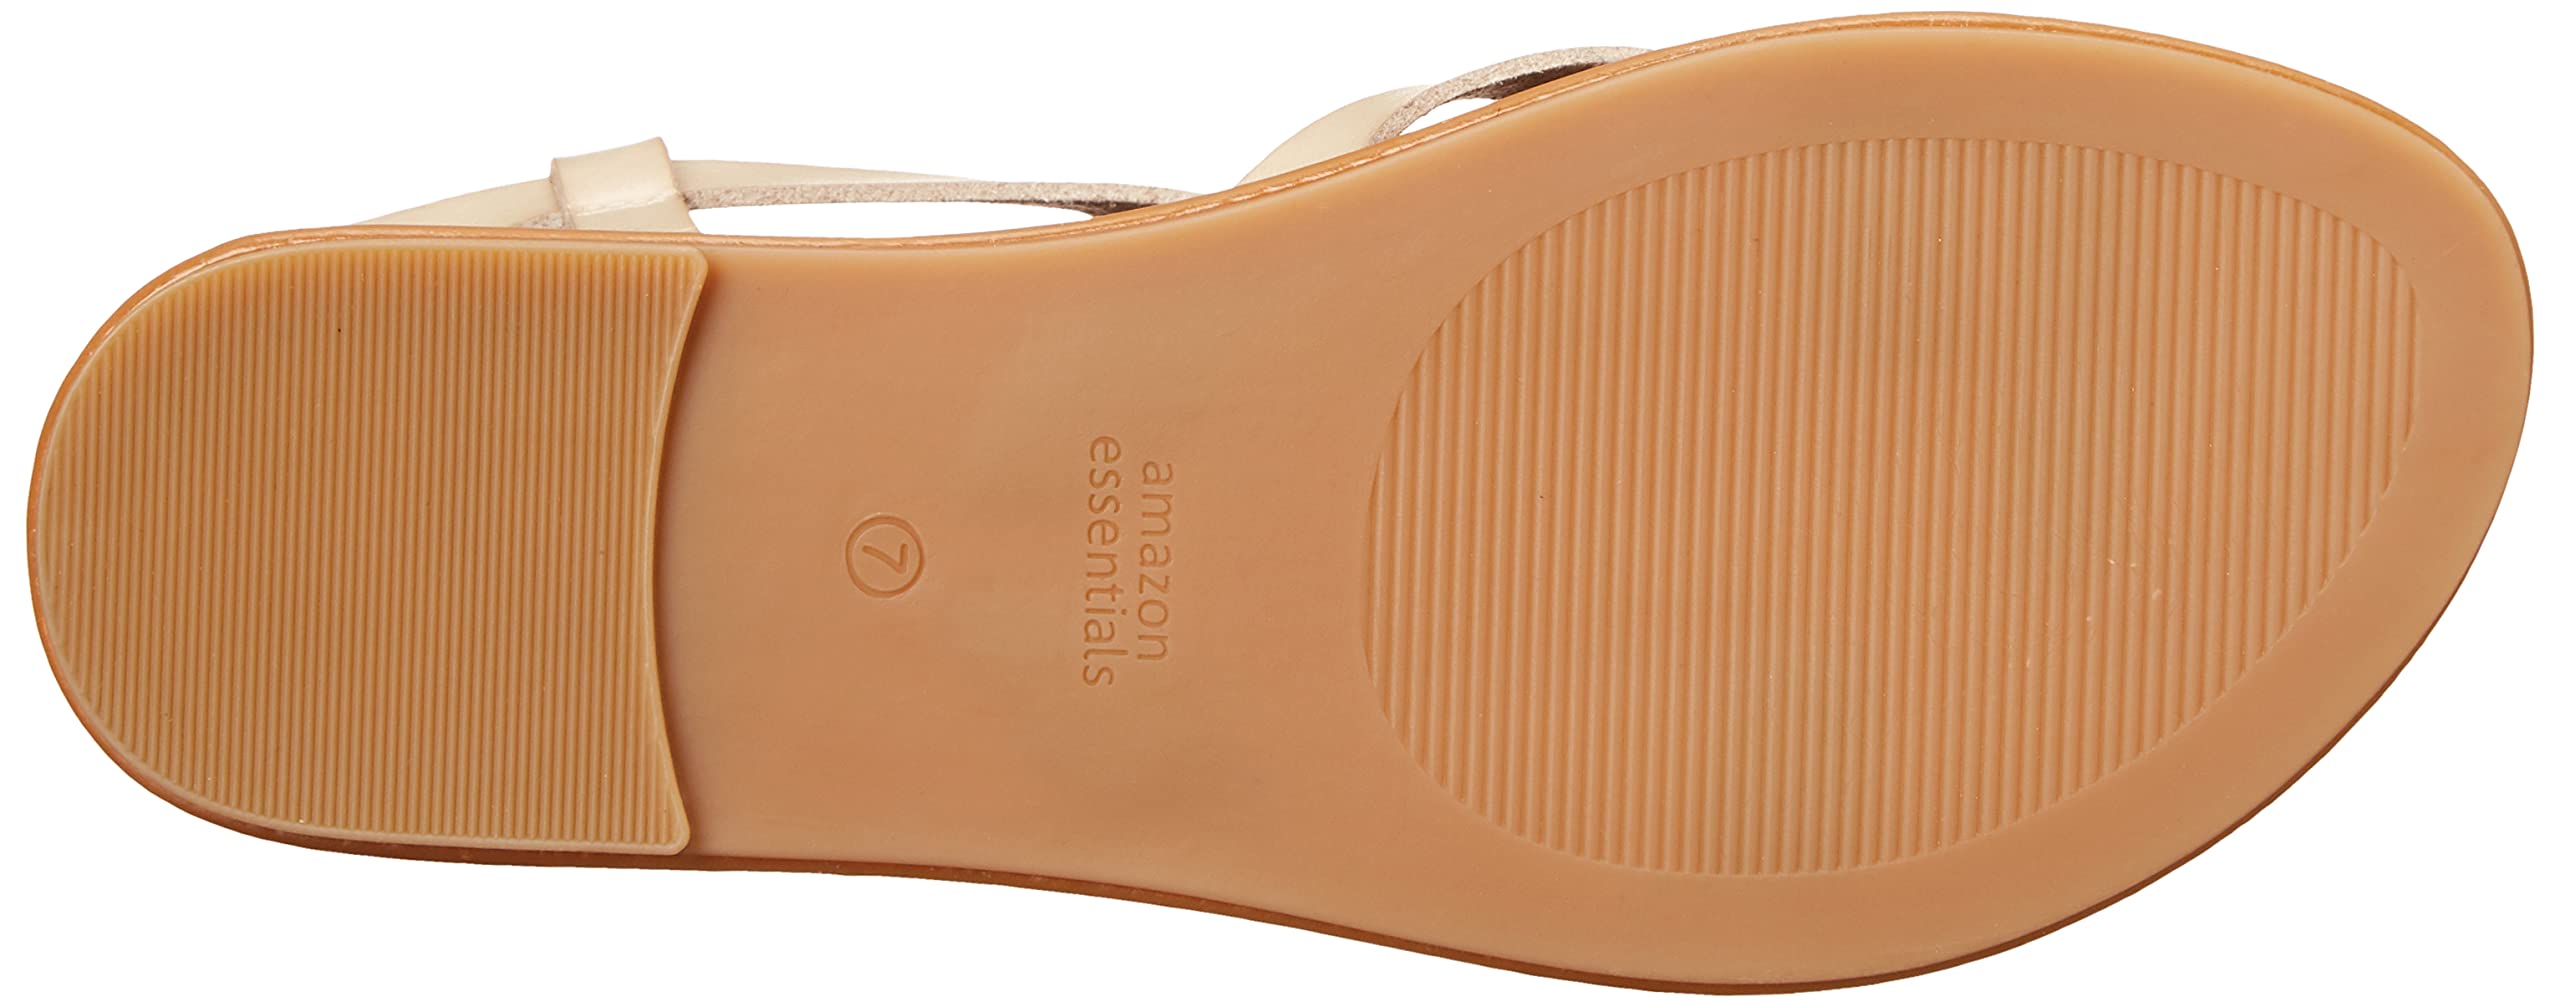 Amazon Essentials Women's Casual Strappy Sandal